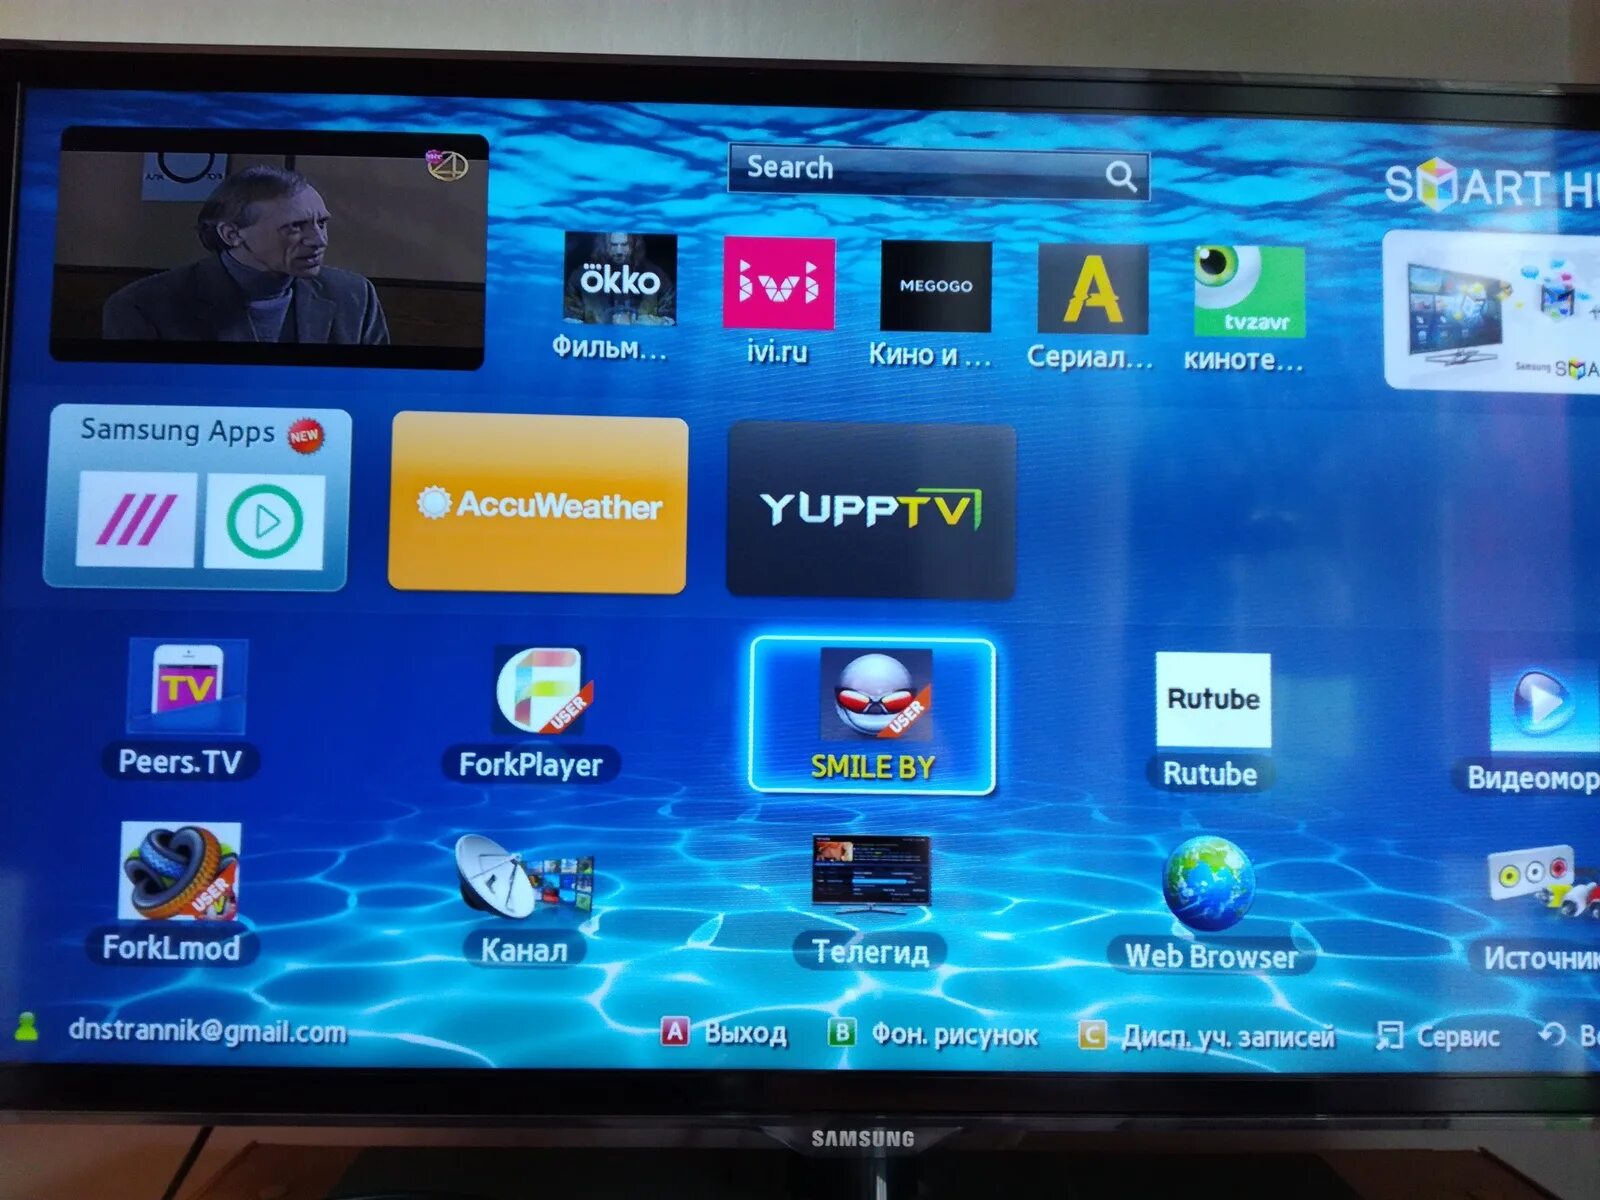 Бесплатный интернет приложение для телевизора. Телевизор Samsung смарт ТВ каналы. Samsung apps для Smart TV. Телевизор самсунг не смарт ТВ. ТВ приставка самсунг смарт ТВ.